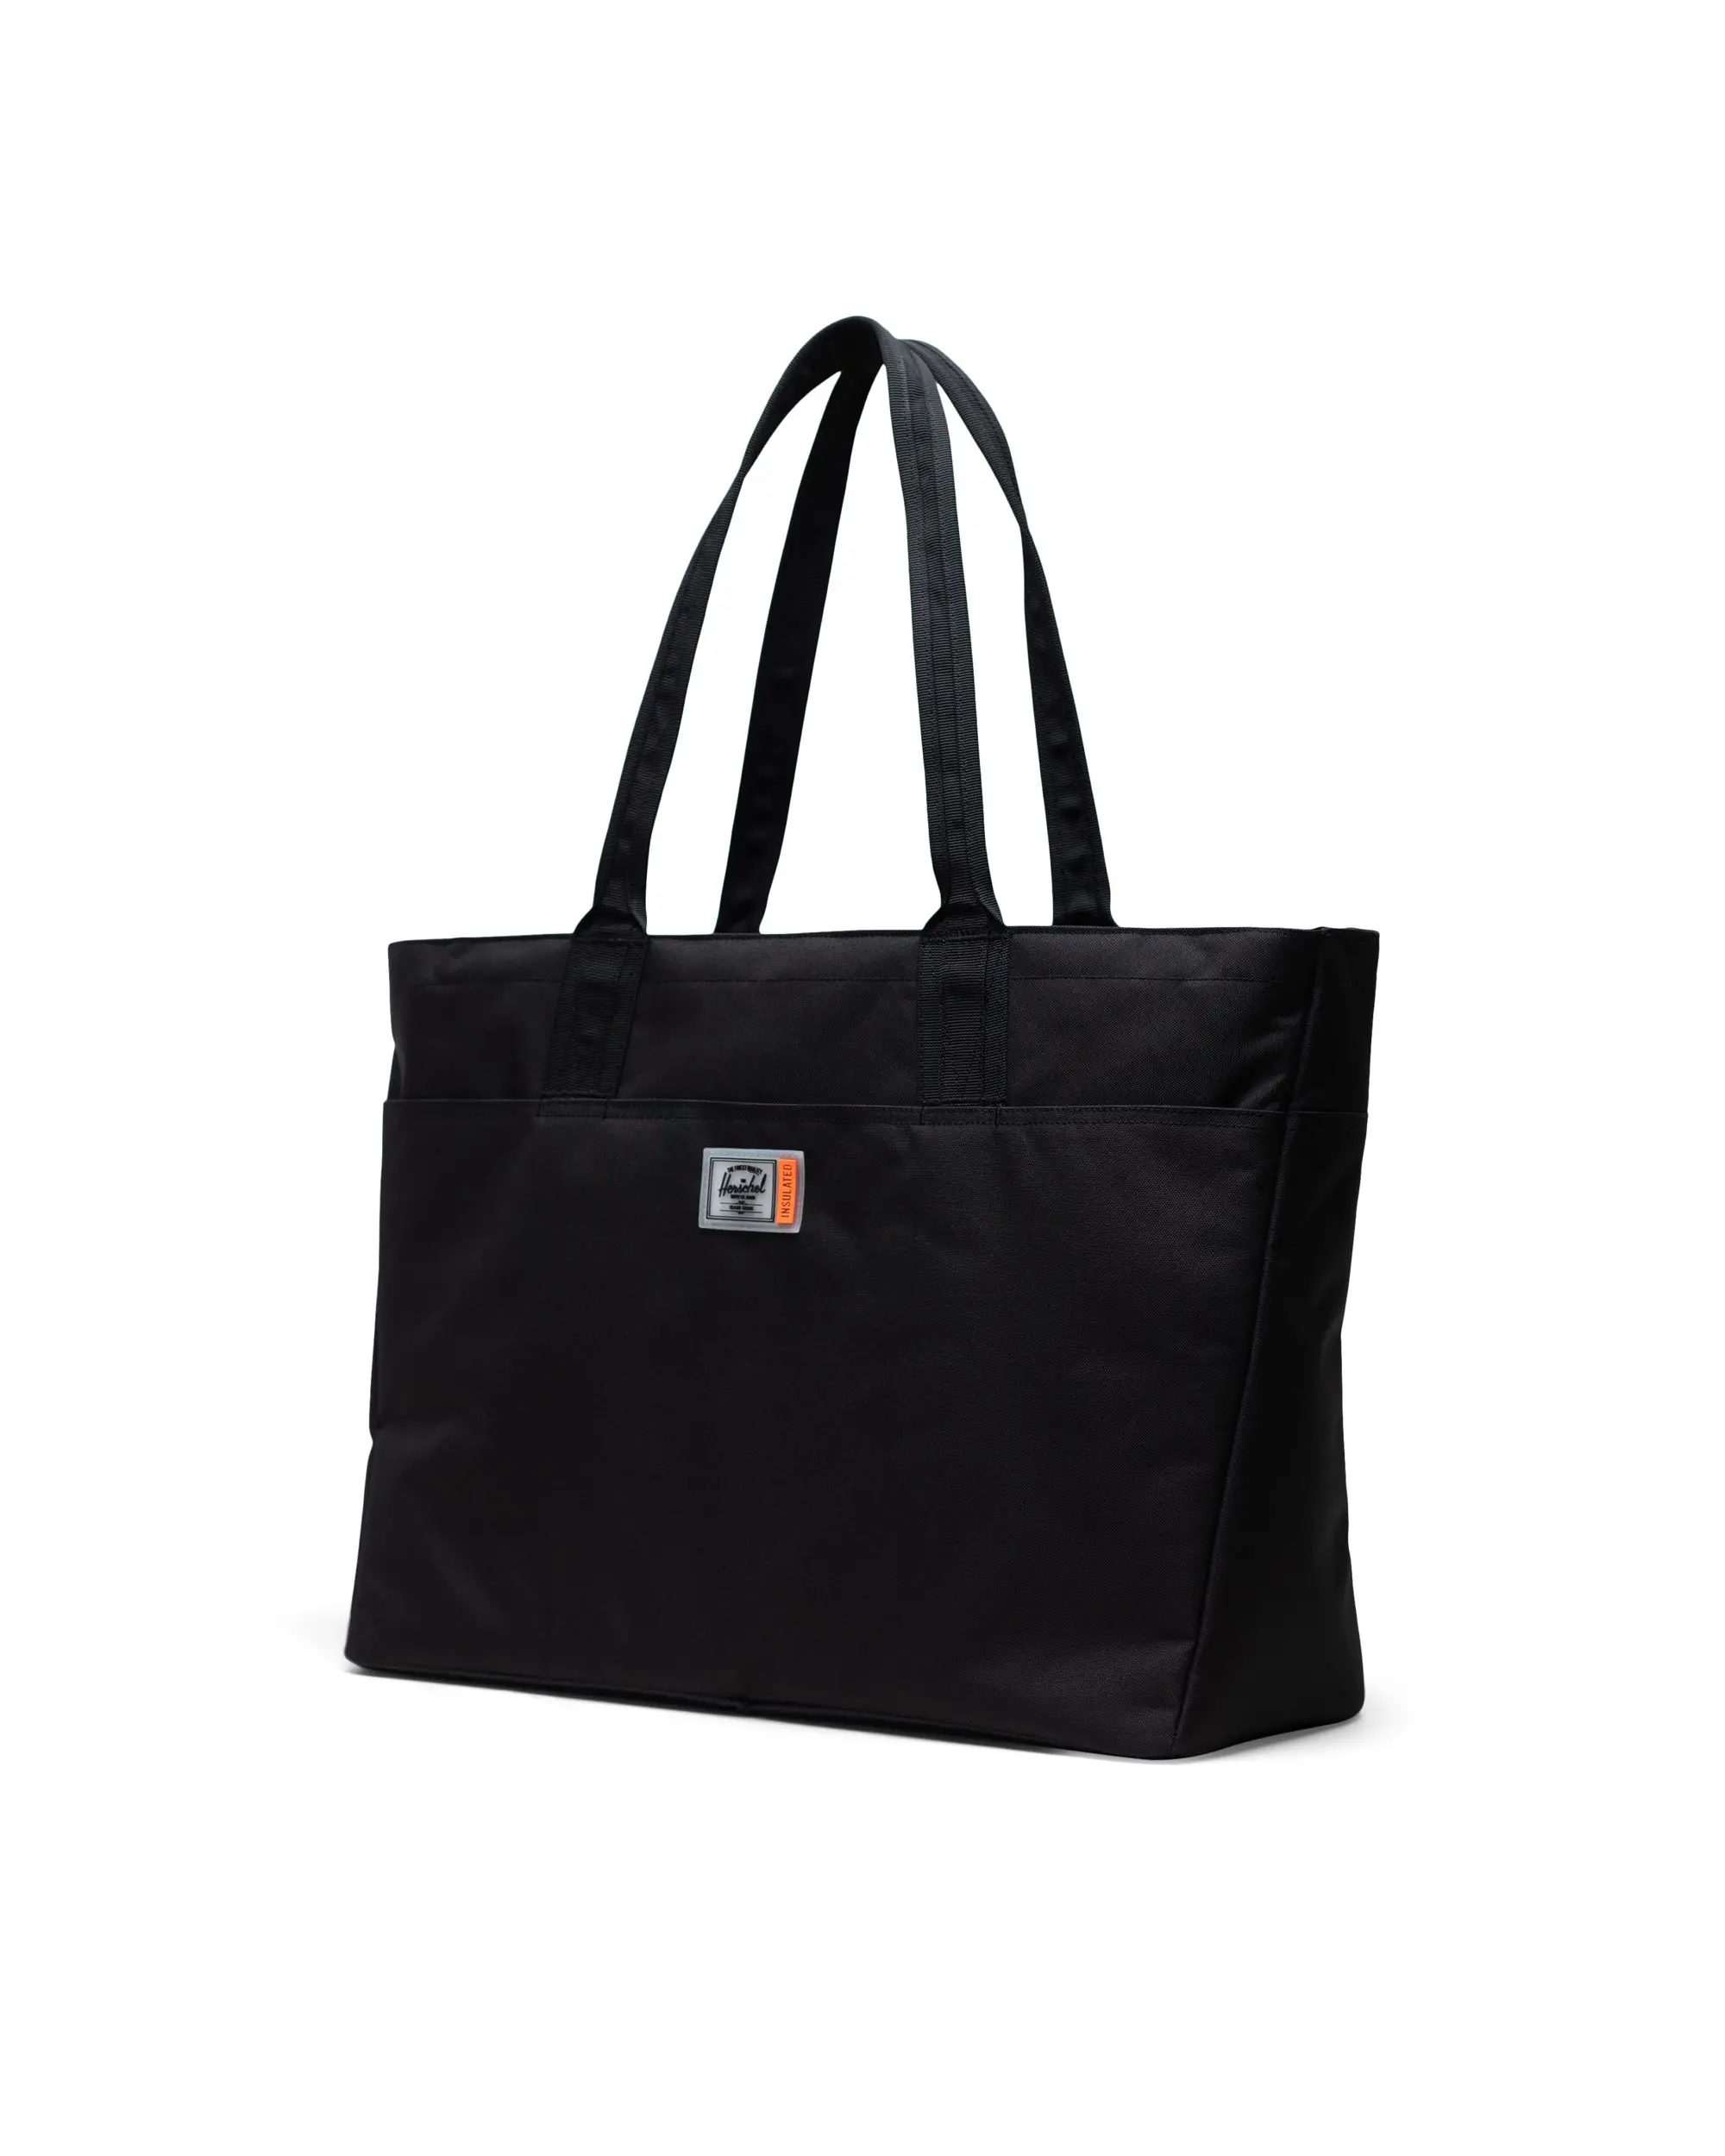 Alexander Zip Tote Bag Large Insulated | Herschel Supply Co.